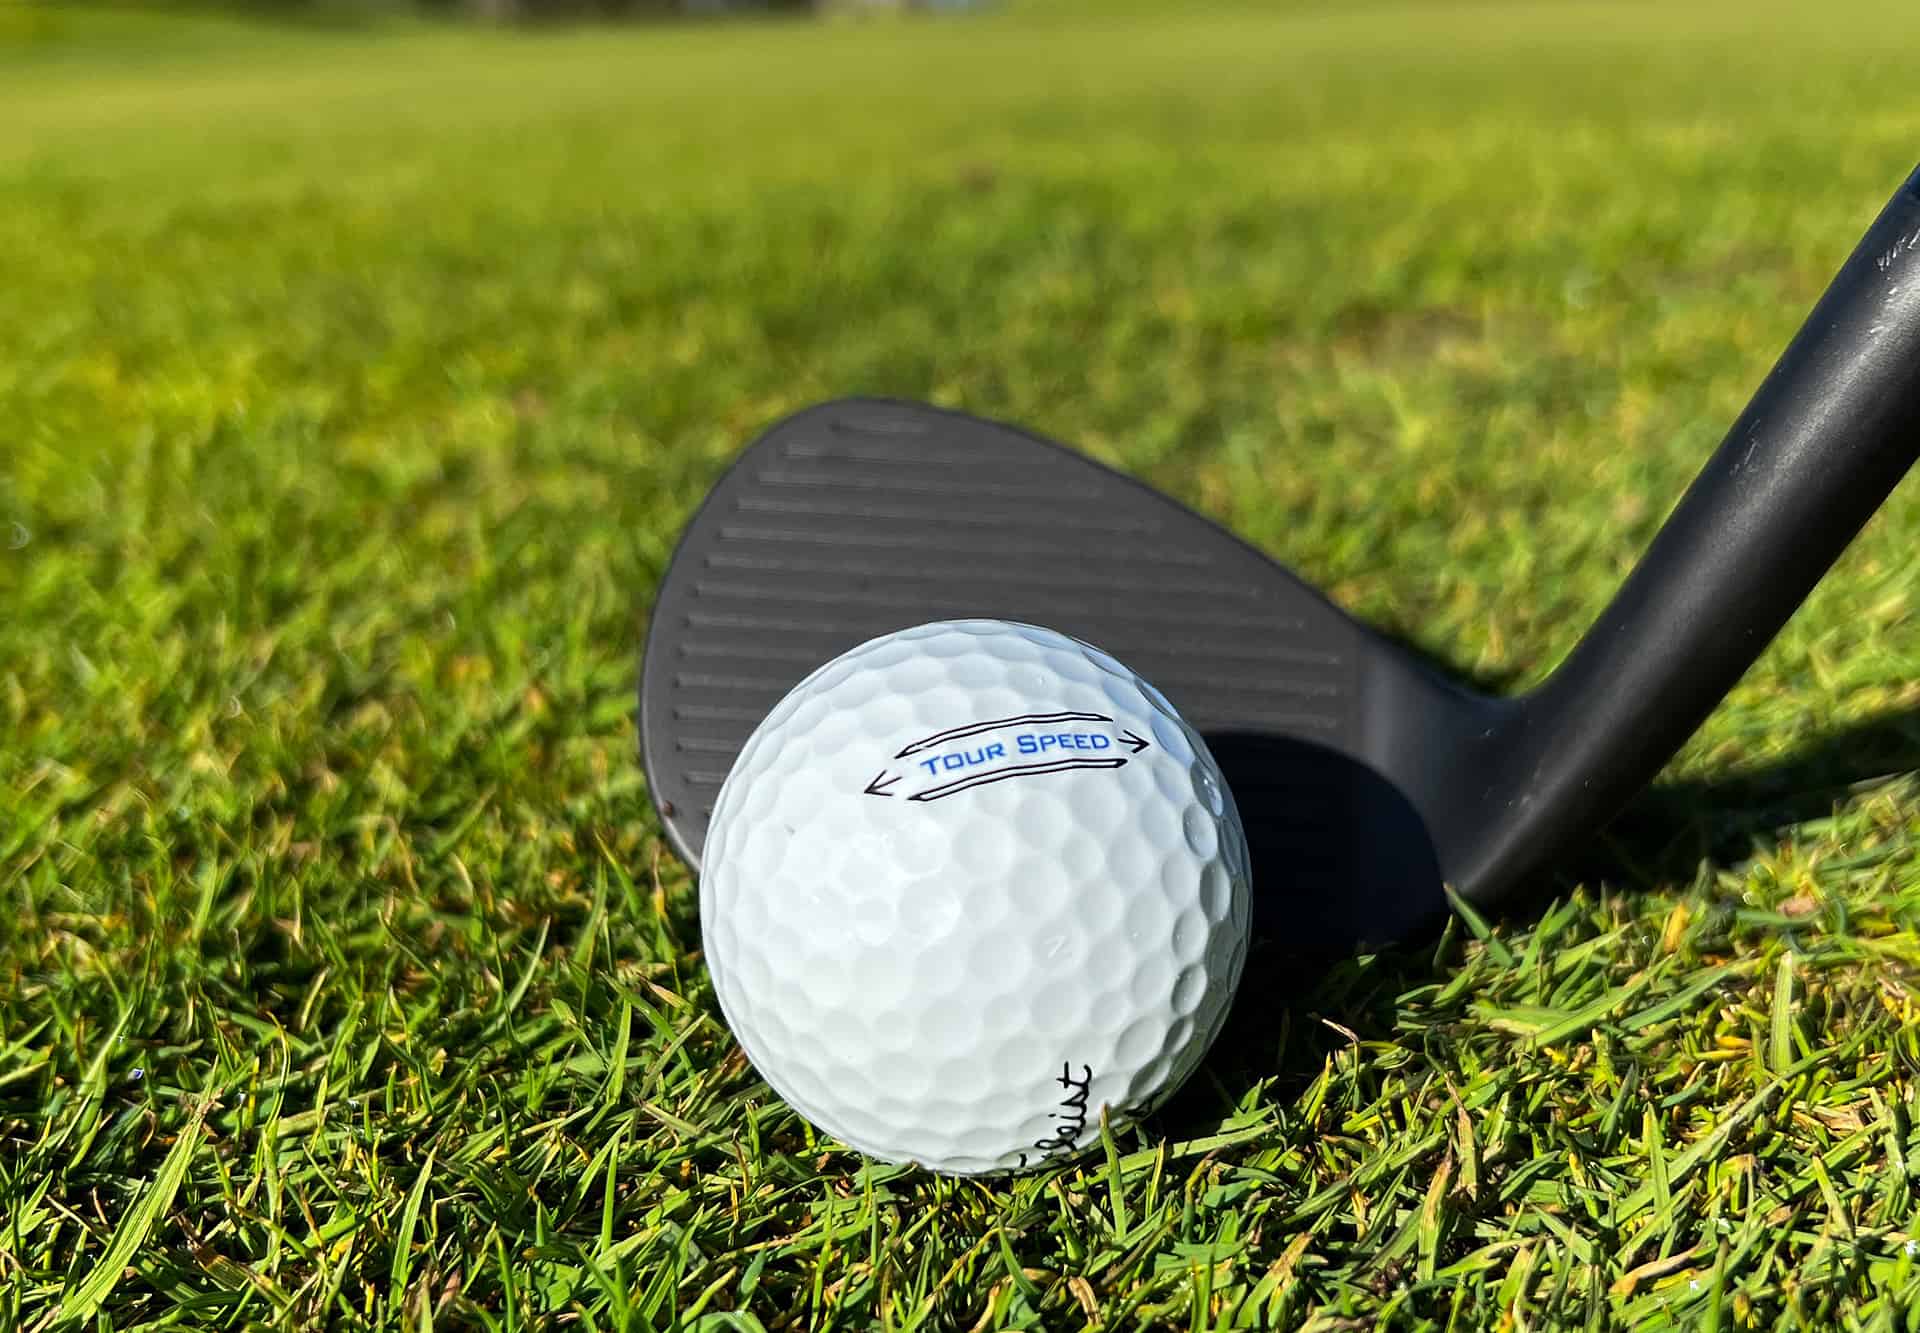 Titleist Tour Speed golf ball review